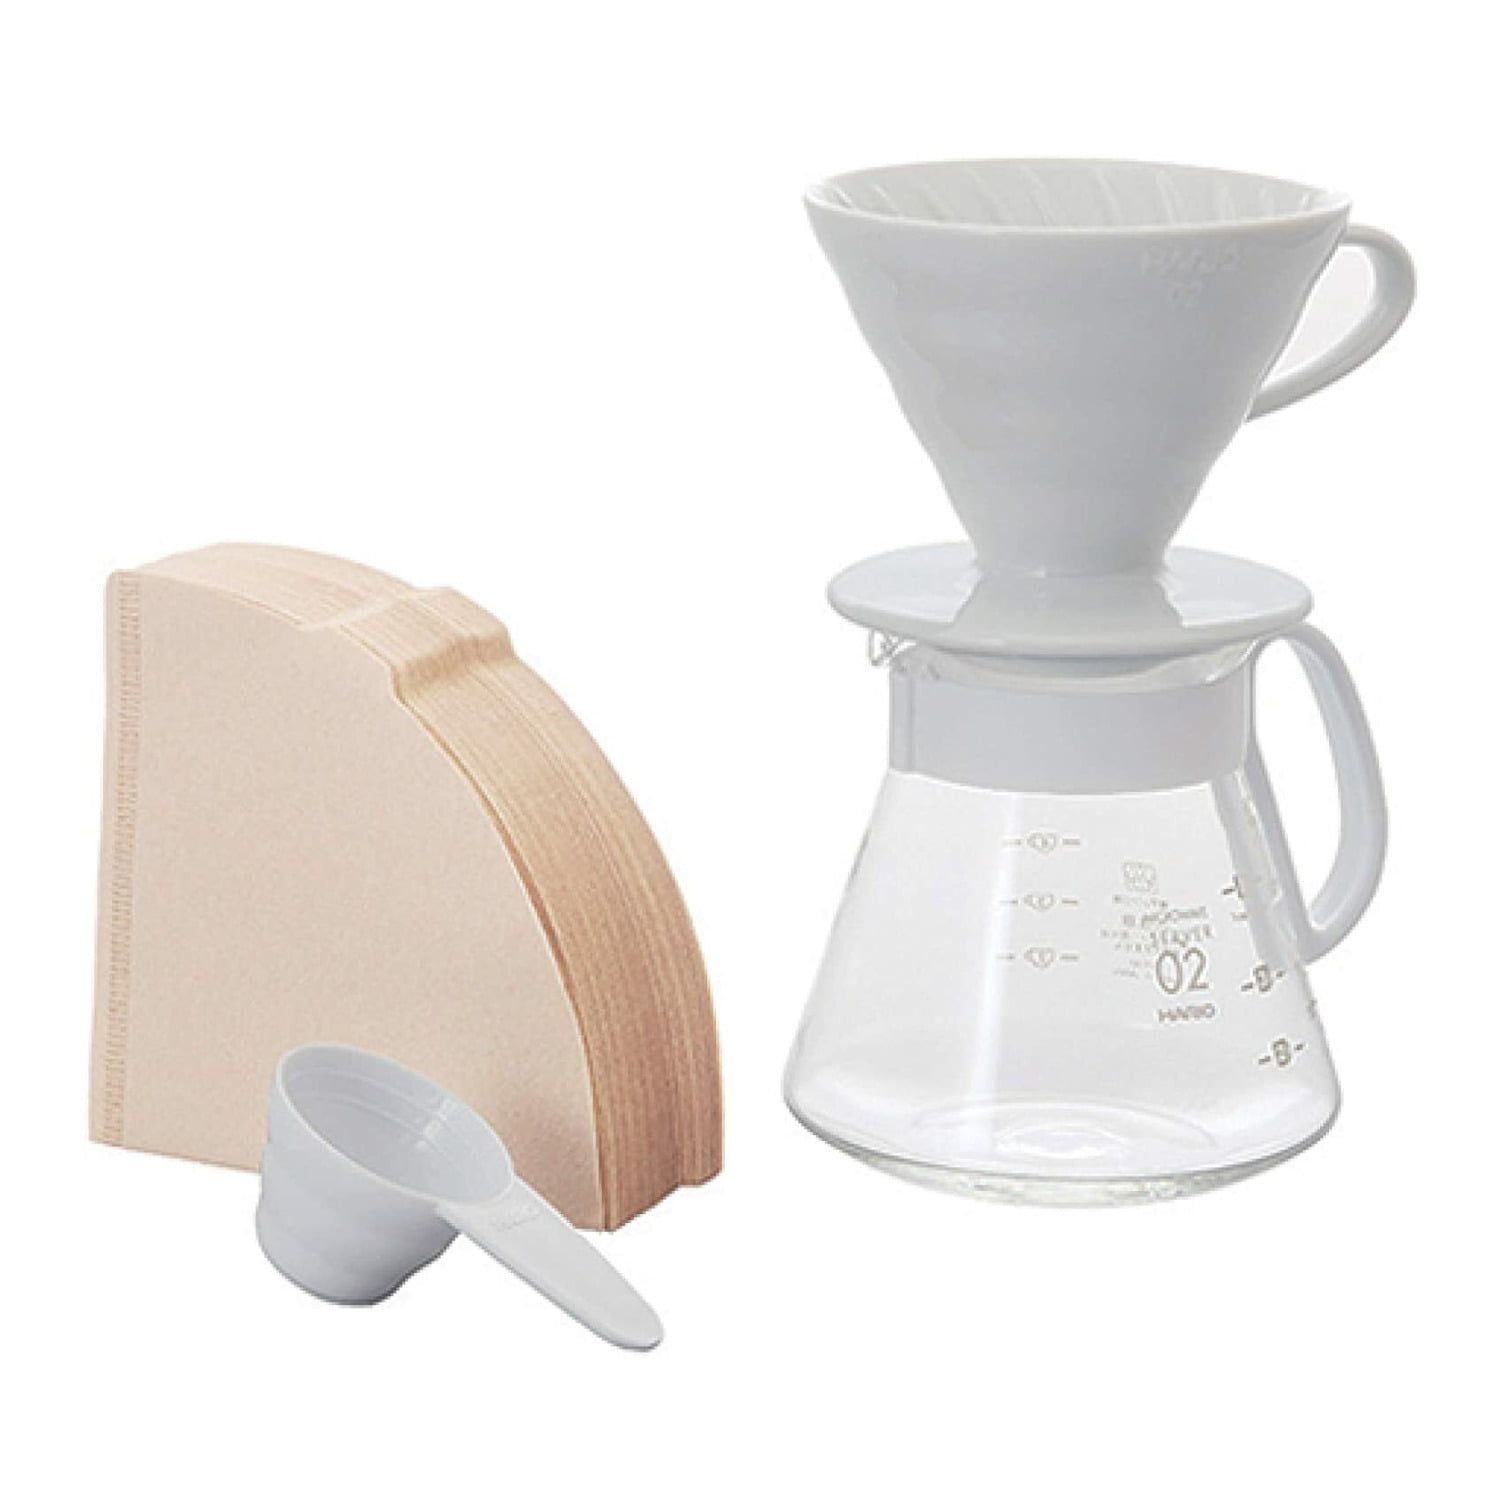 White Size 02 Hario Model V60 Ceramic Coffee Dripper 